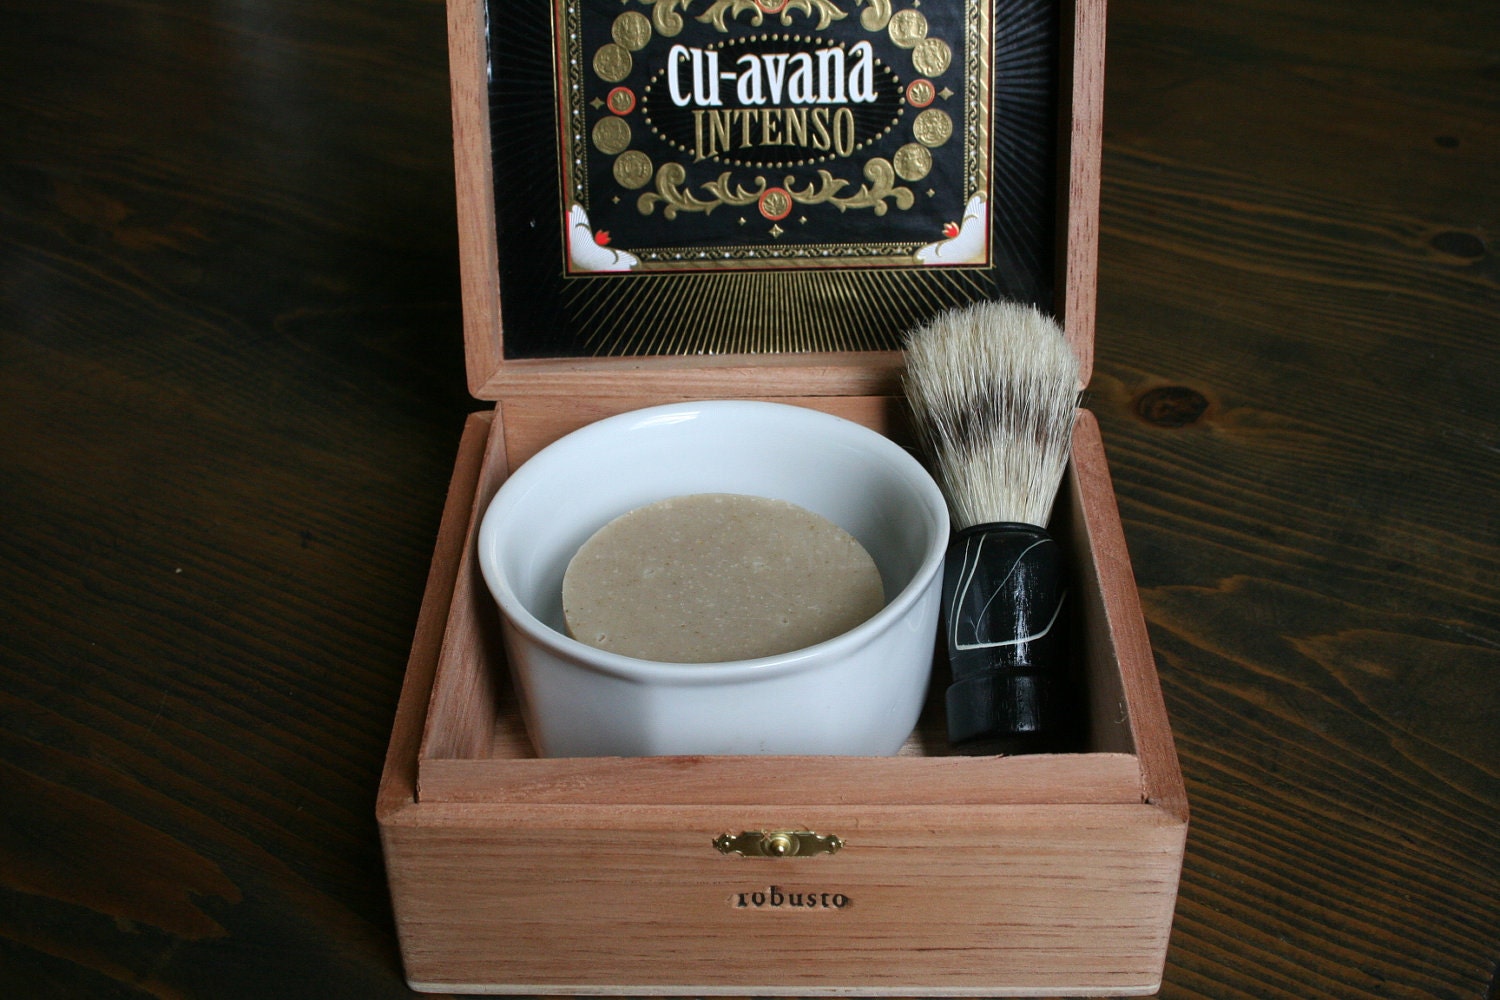 Basics - Shaving Kit with Beer Shaving Soap